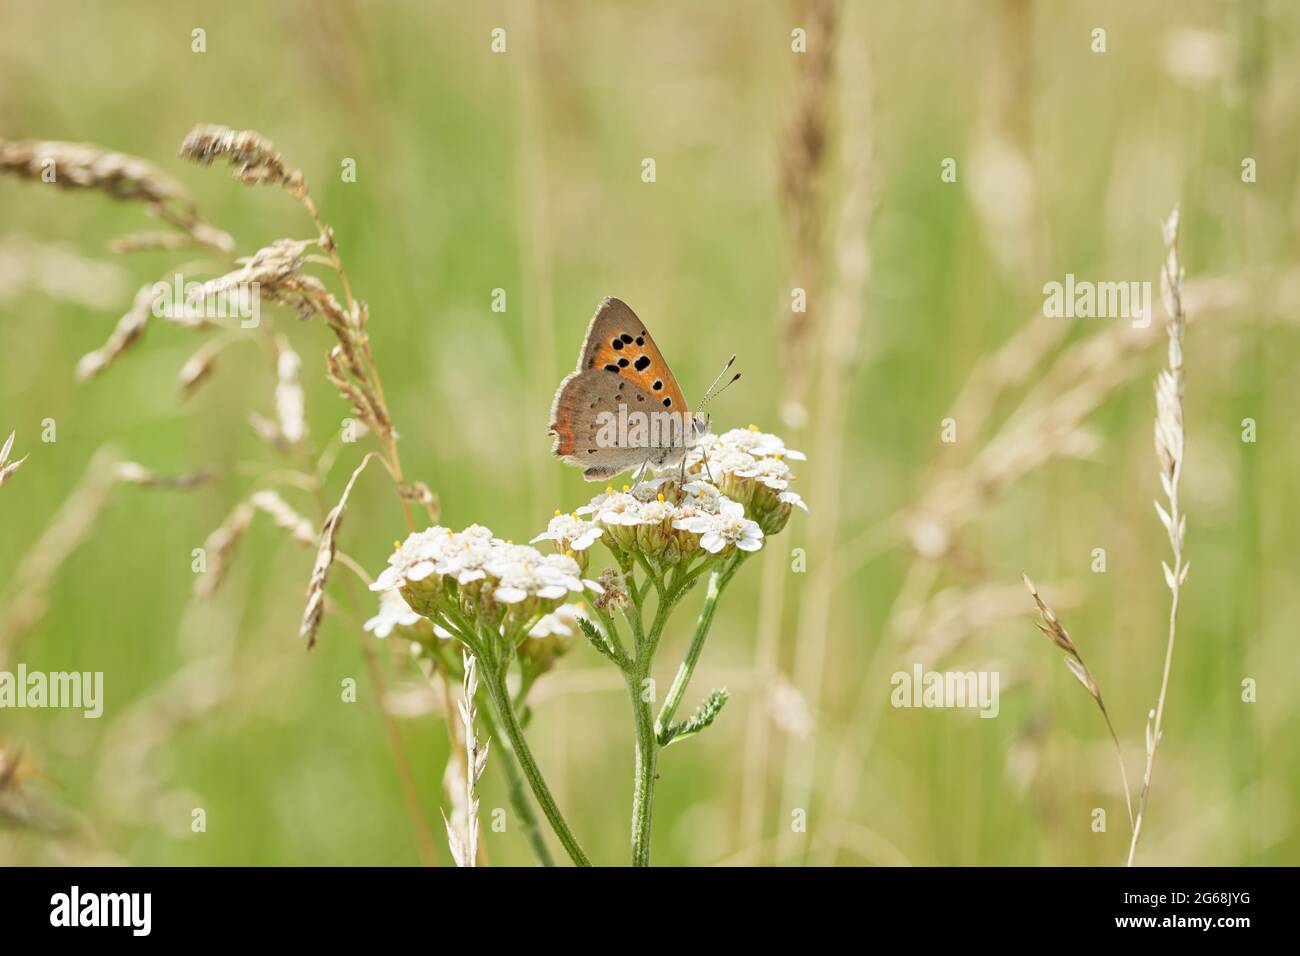 Piccola farfalla di rame (Lycaena phlaeas) si trova su un fiore bianco in prato verde. Foto Stock